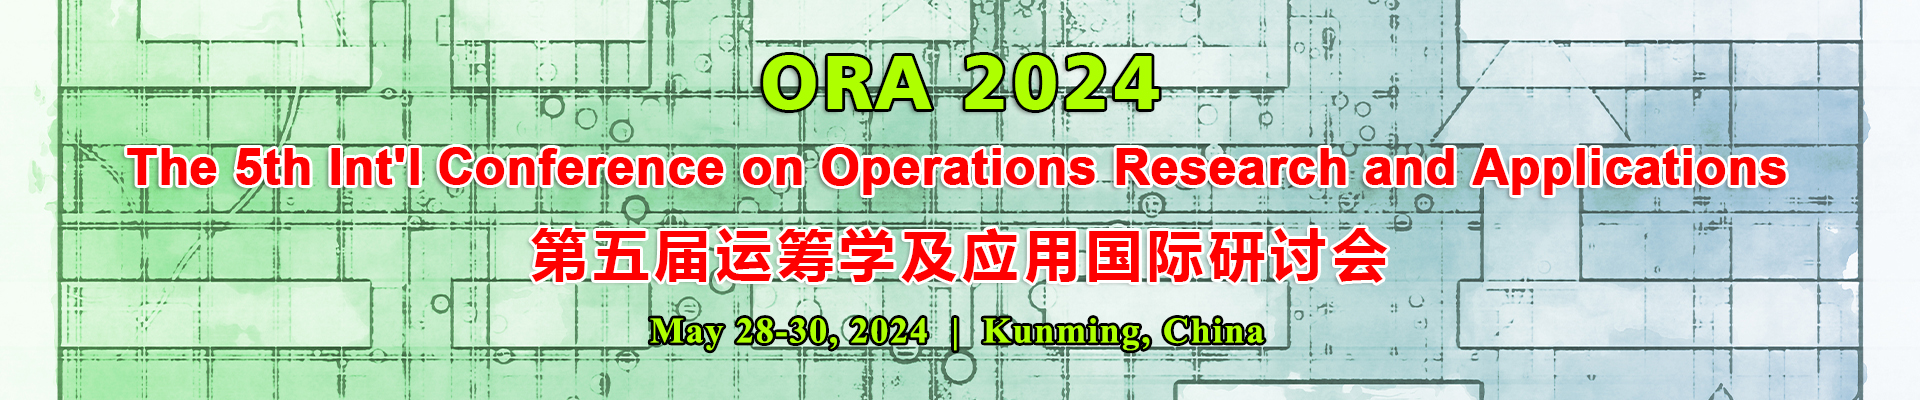 第五届运筹学及应用国际研讨会(ORA 2024) 